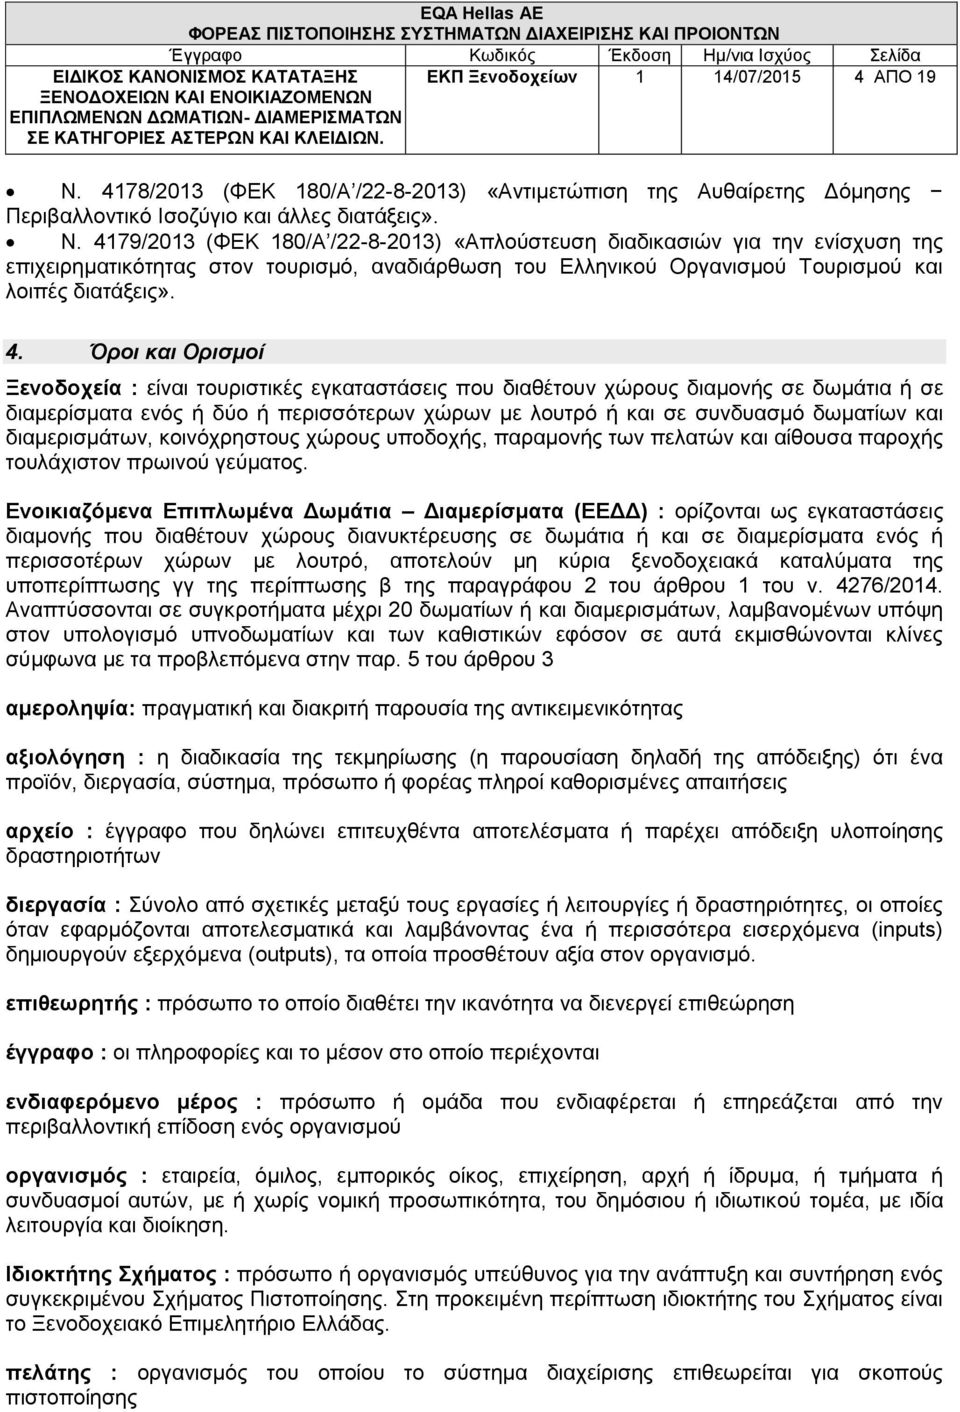 4179/2013 (ΦΕΚ 180/Α /22-8-2013) «Απλούστευση διαδικασιών για την ενίσχυση της επιχειρηματικότητας στον τουρισμό, αναδιάρθωση του Ελληνικού Οργανισμού Τουρισμού και λοιπές διατάξεις». 4.